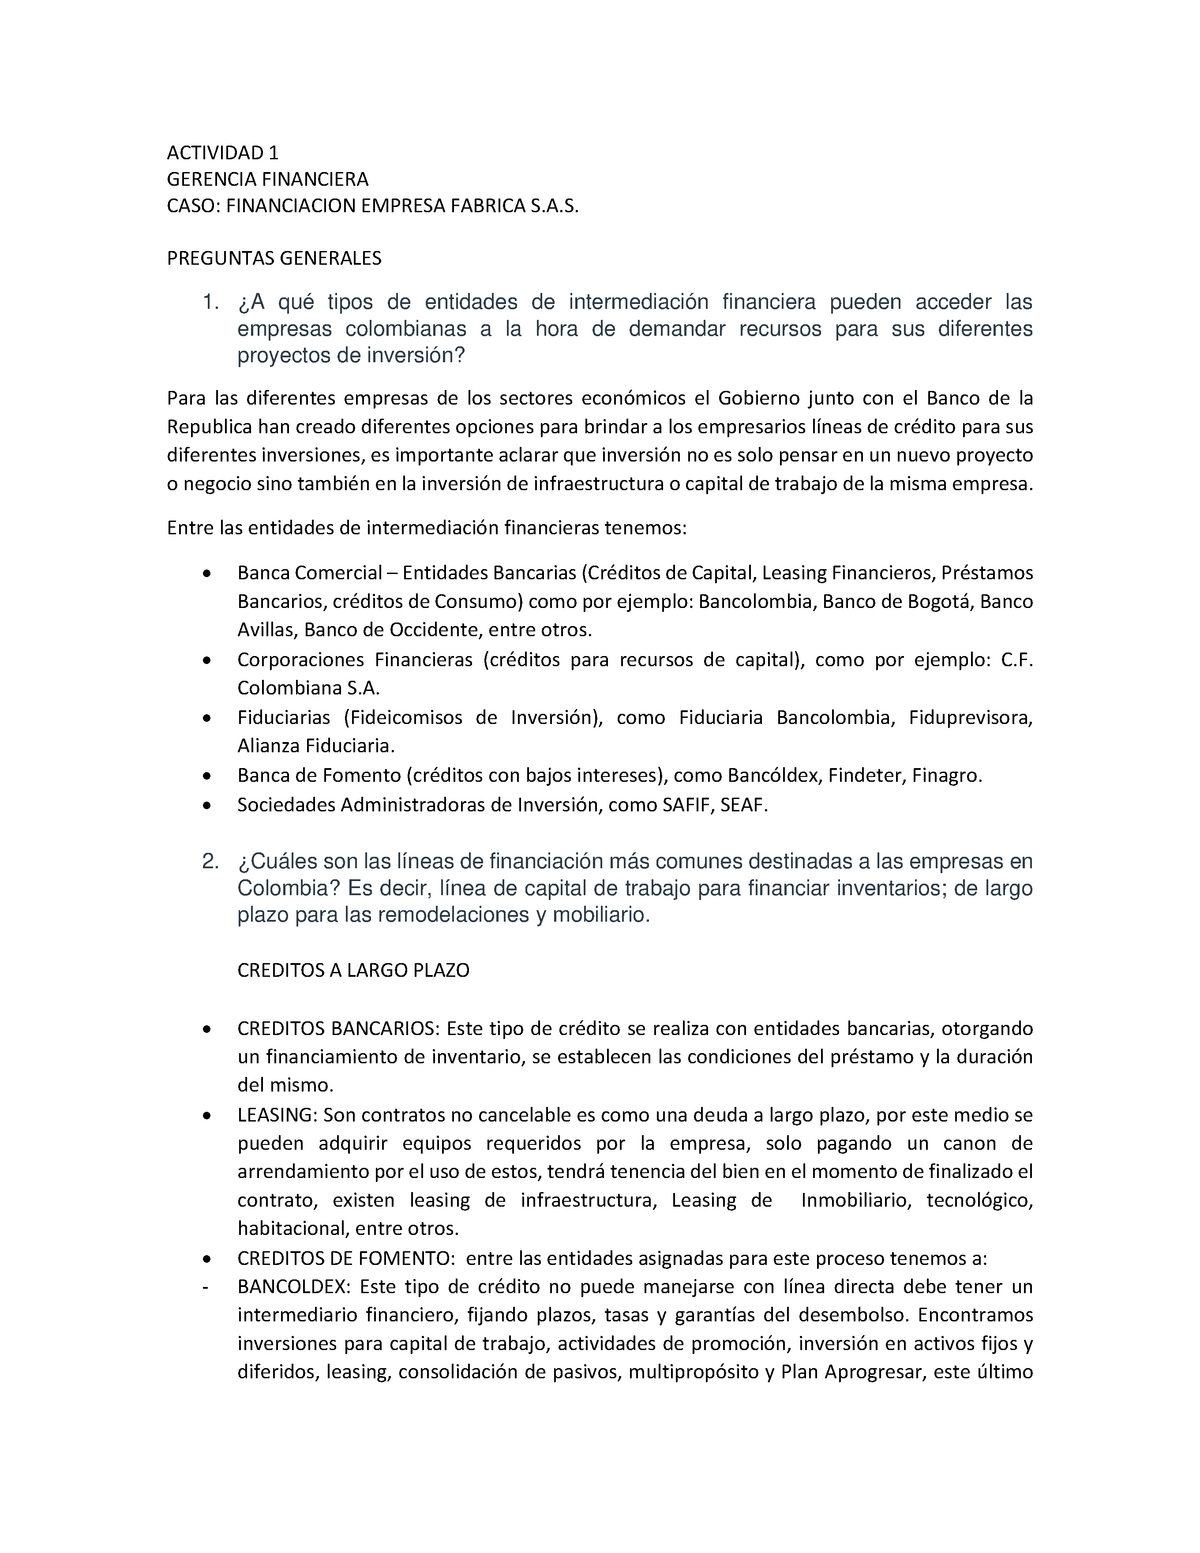 Actividad 1 - Gerencia Financiera Caso Financiacion Empresa Fabrica SAS -  Warning: TT: undefined - Studocu